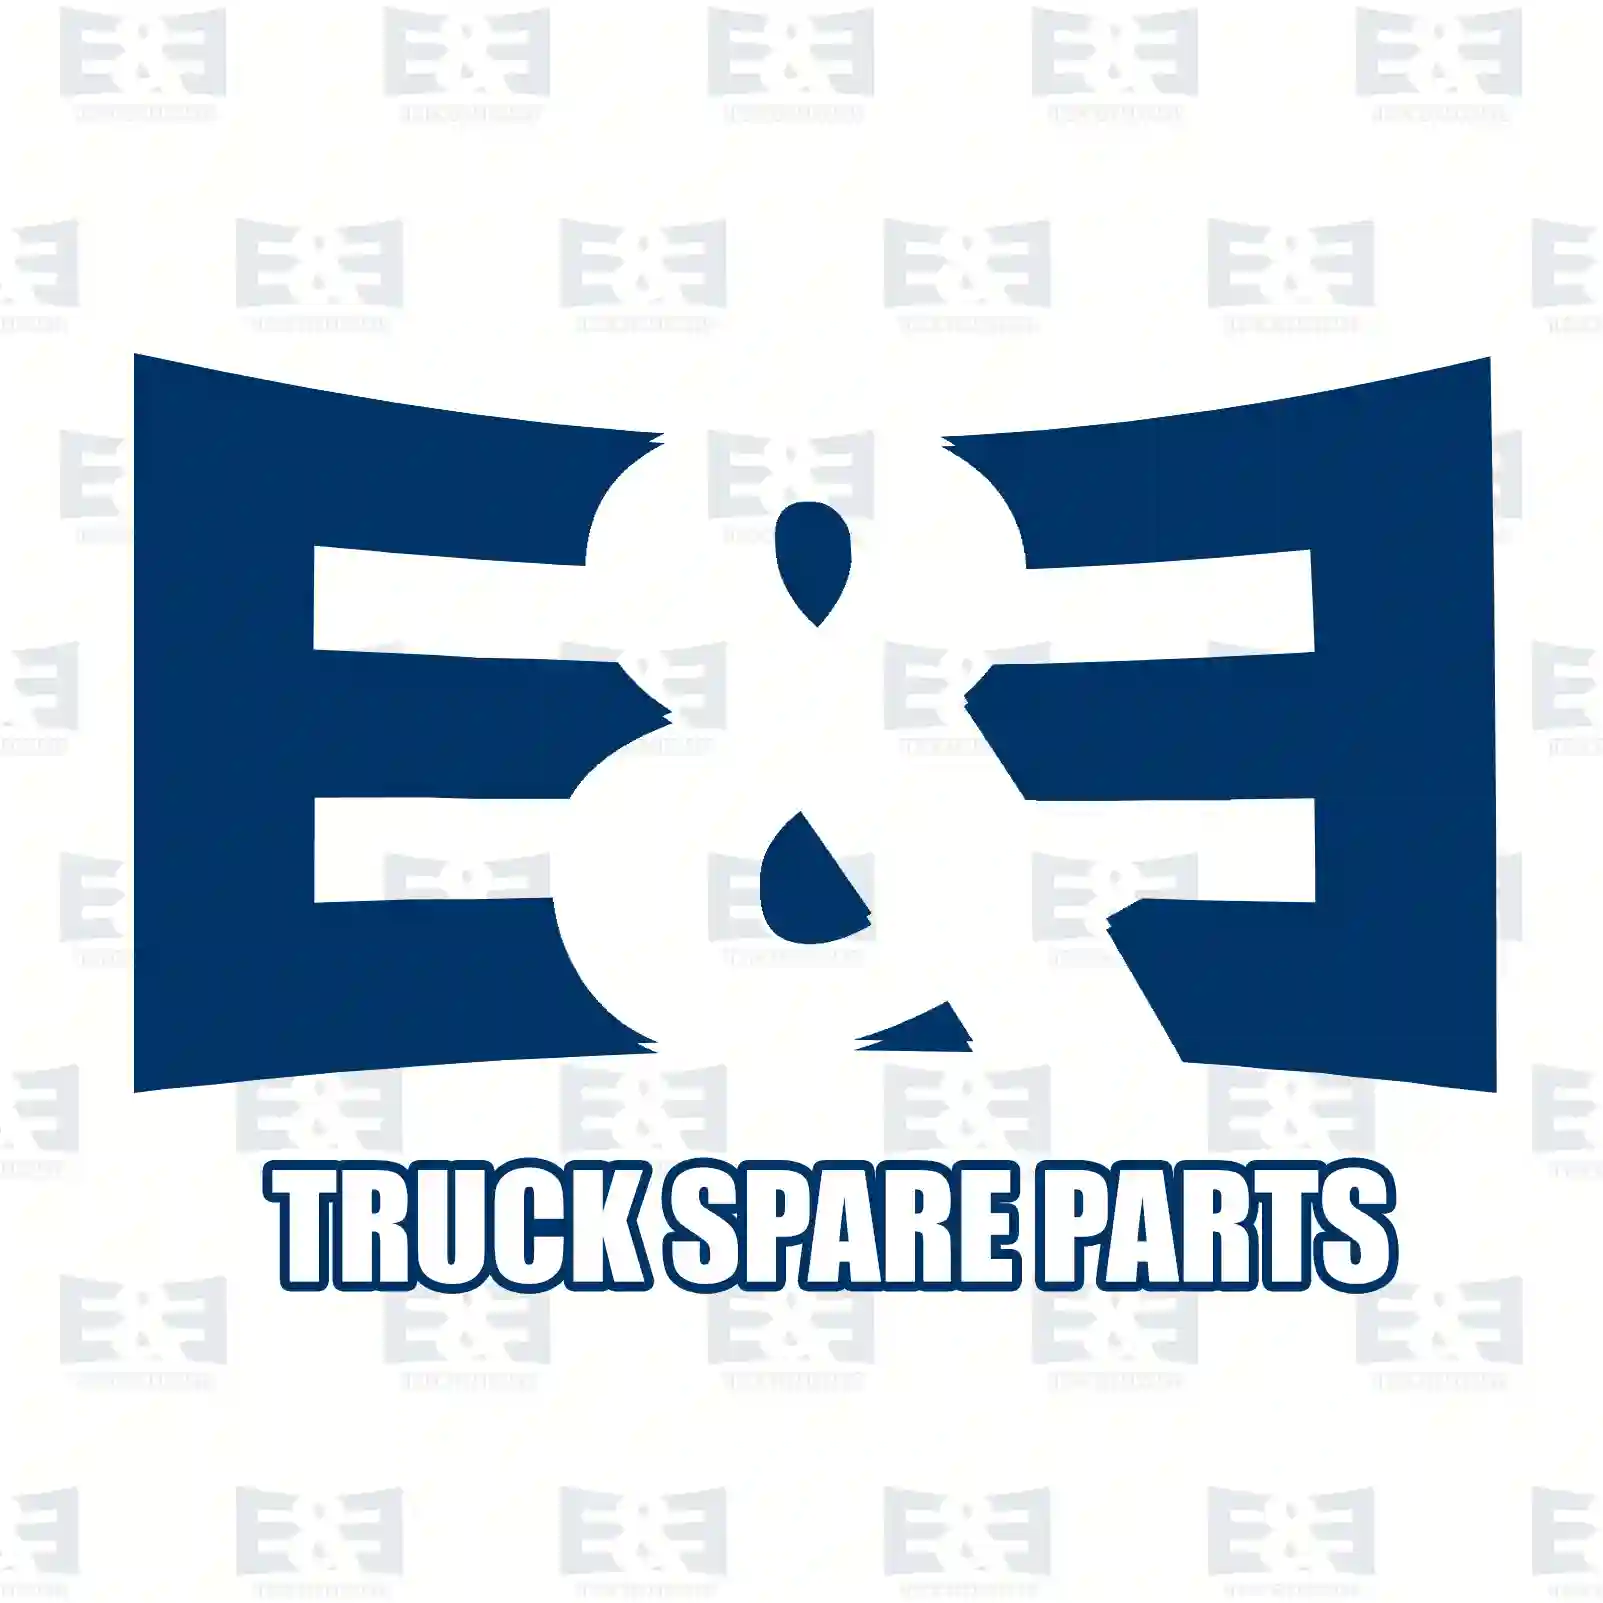 Air dryer kit, 2E2295388, 4291697 ||  2E2295388 E&E Truck Spare Parts | Truck Spare Parts, Auotomotive Spare Parts Air dryer kit, 2E2295388, 4291697 ||  2E2295388 E&E Truck Spare Parts | Truck Spare Parts, Auotomotive Spare Parts